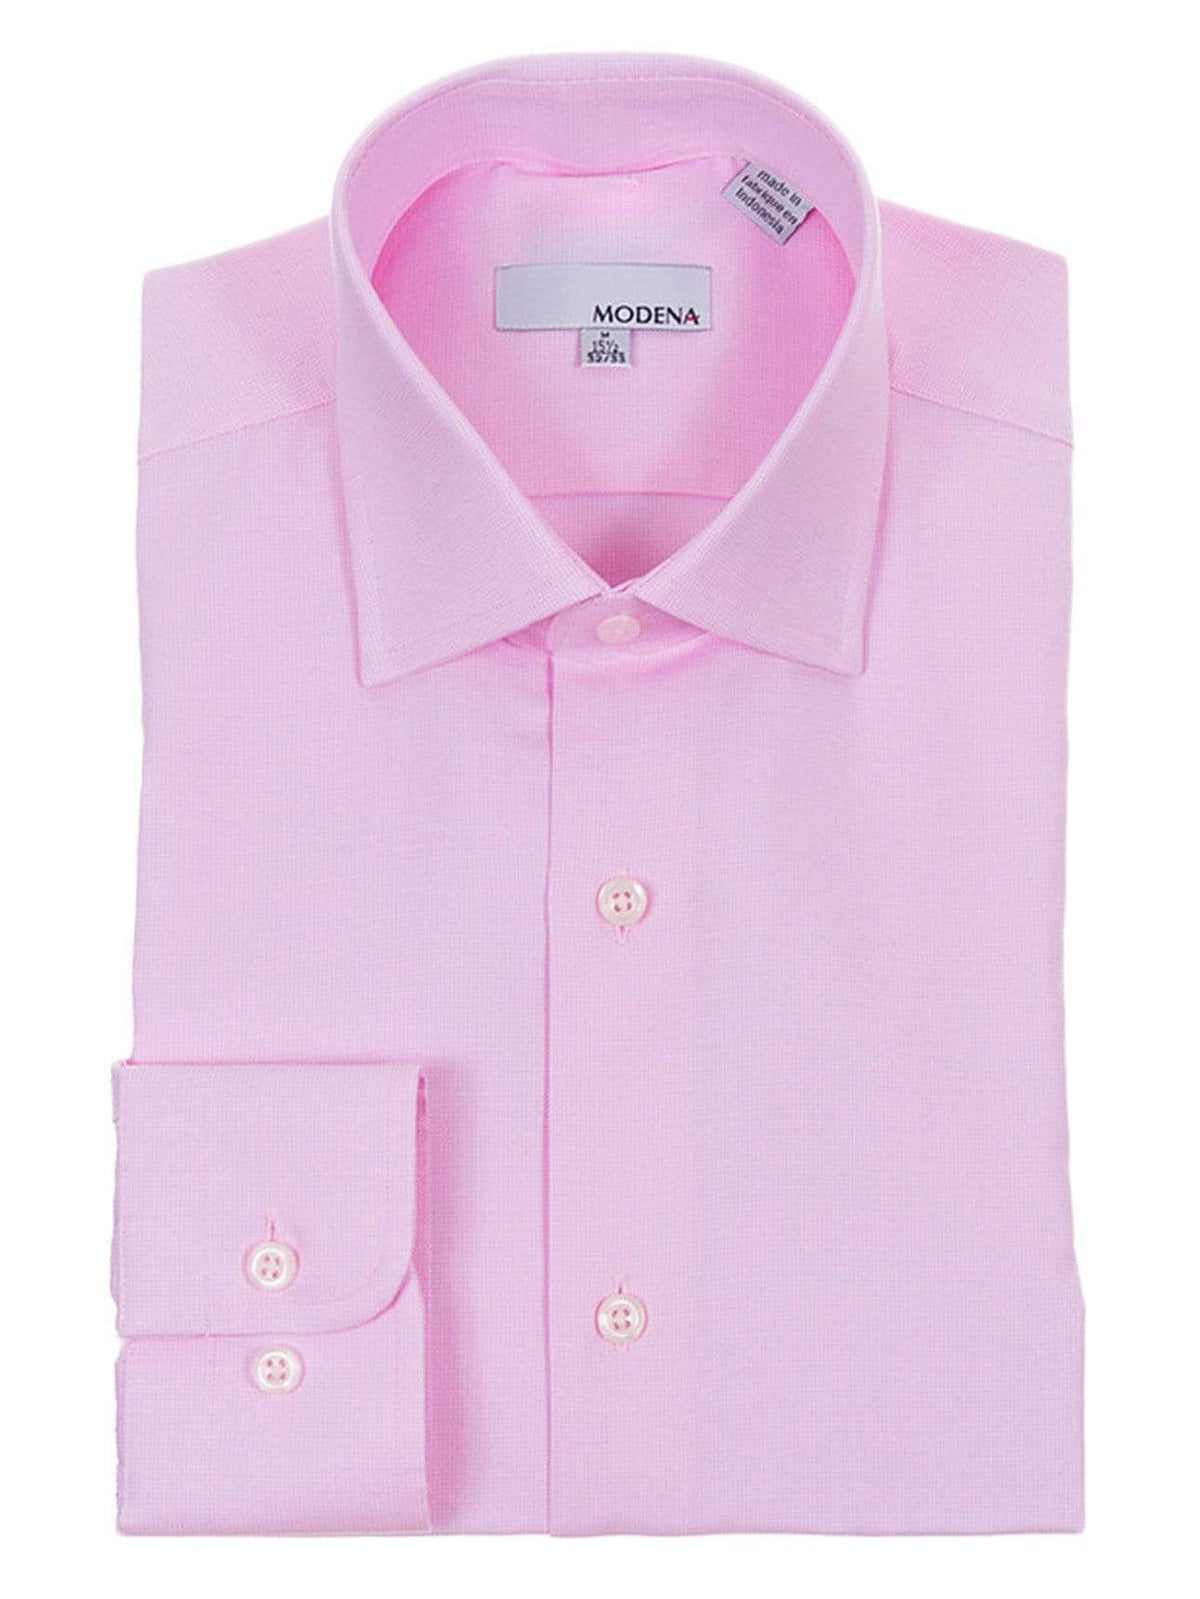 Modena Sale Shirts 22 36/37 Mens Regular Fit Pink Textured Cotton Blend Dress Shirt